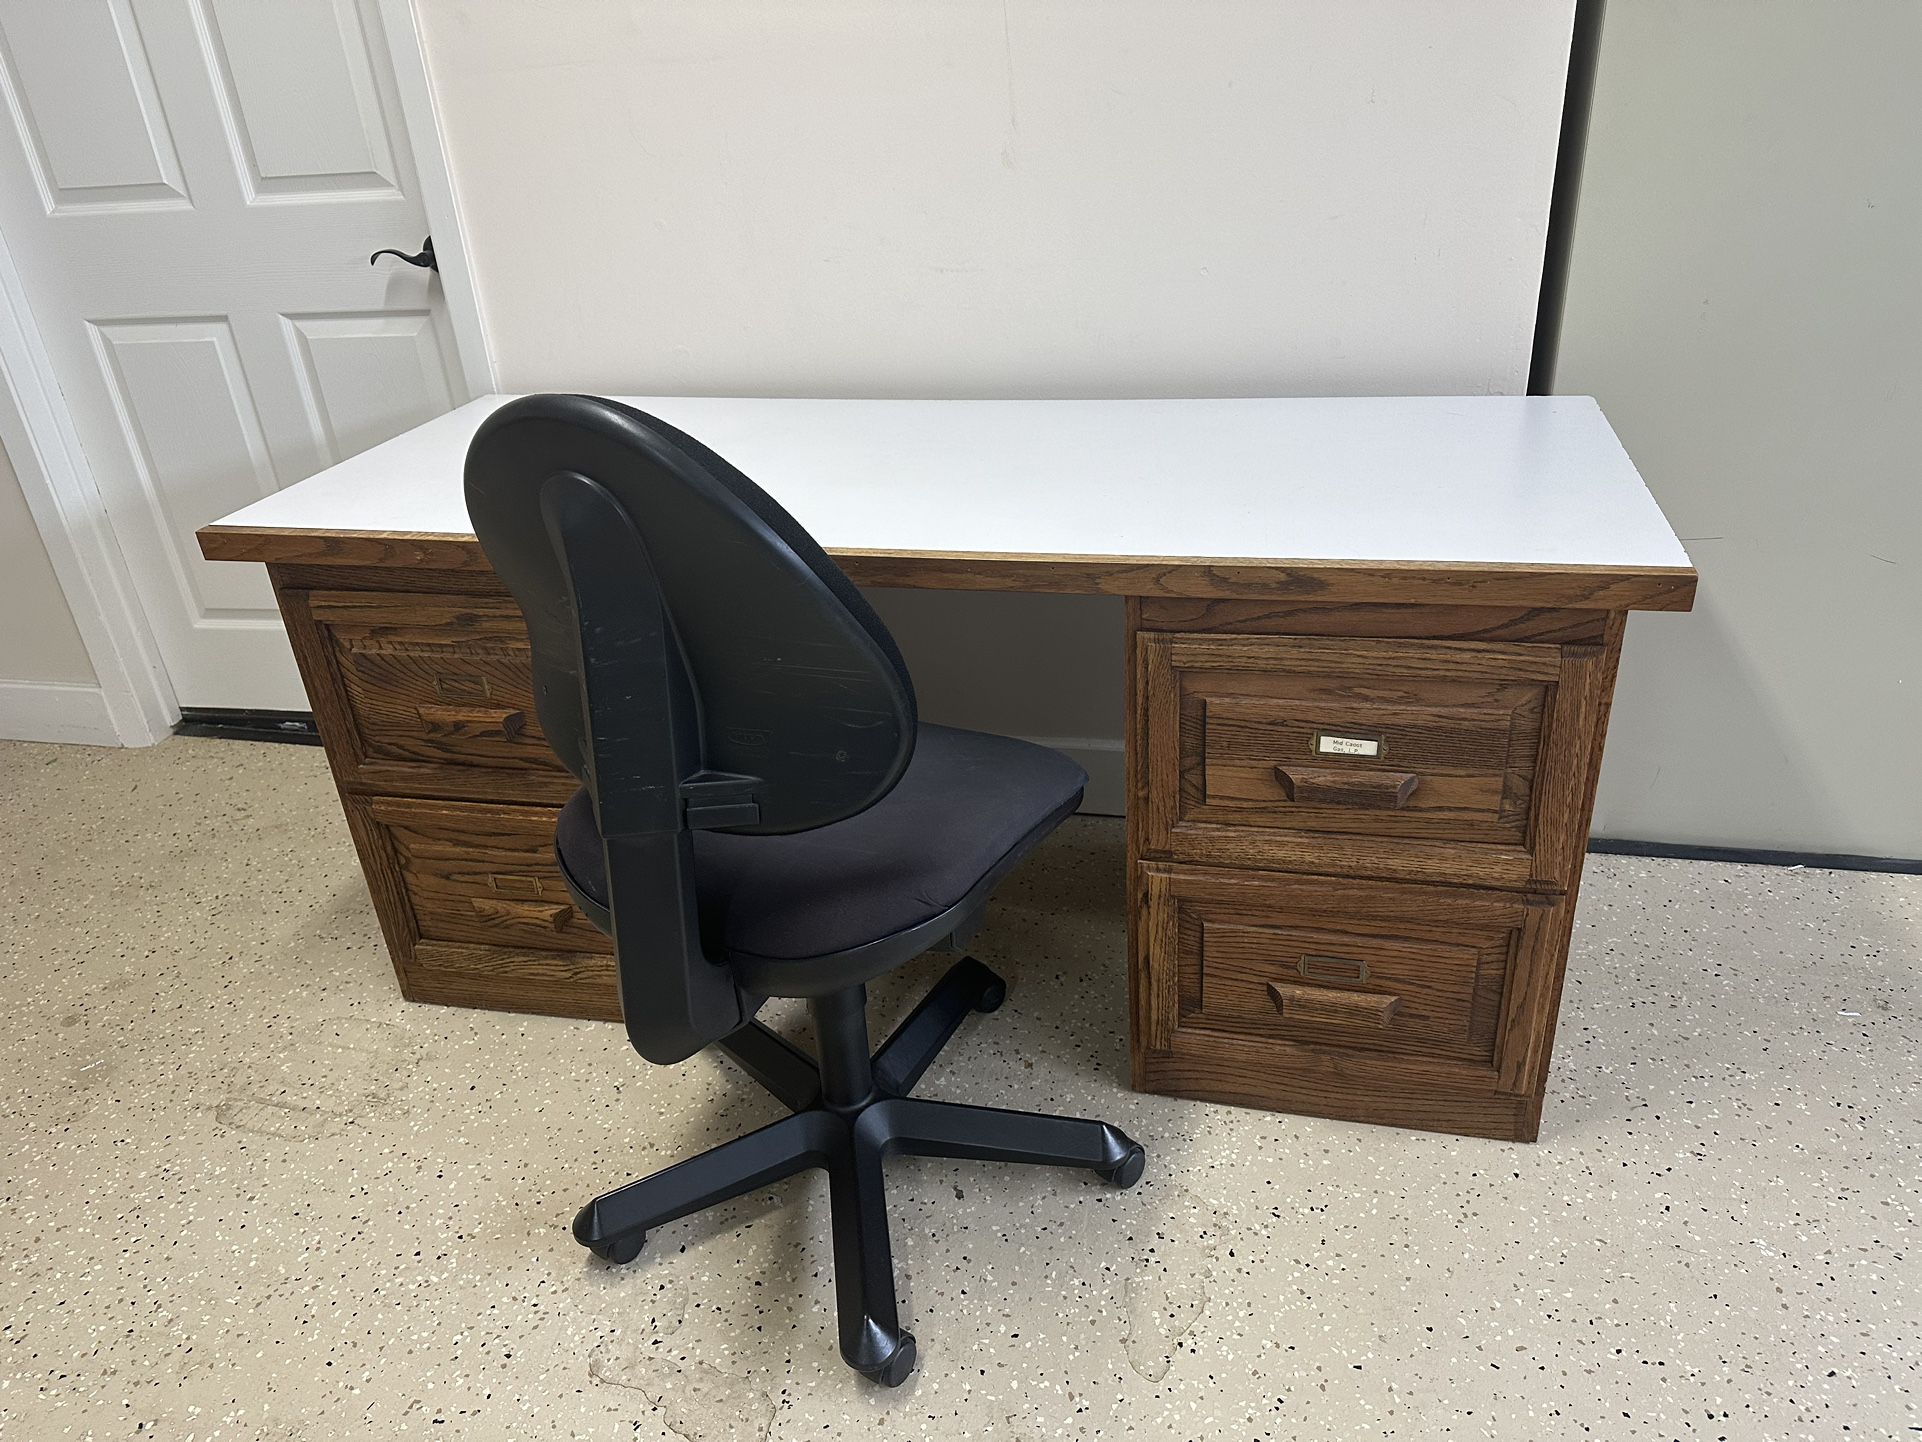 Solid Oak Filing Cabinet Desk